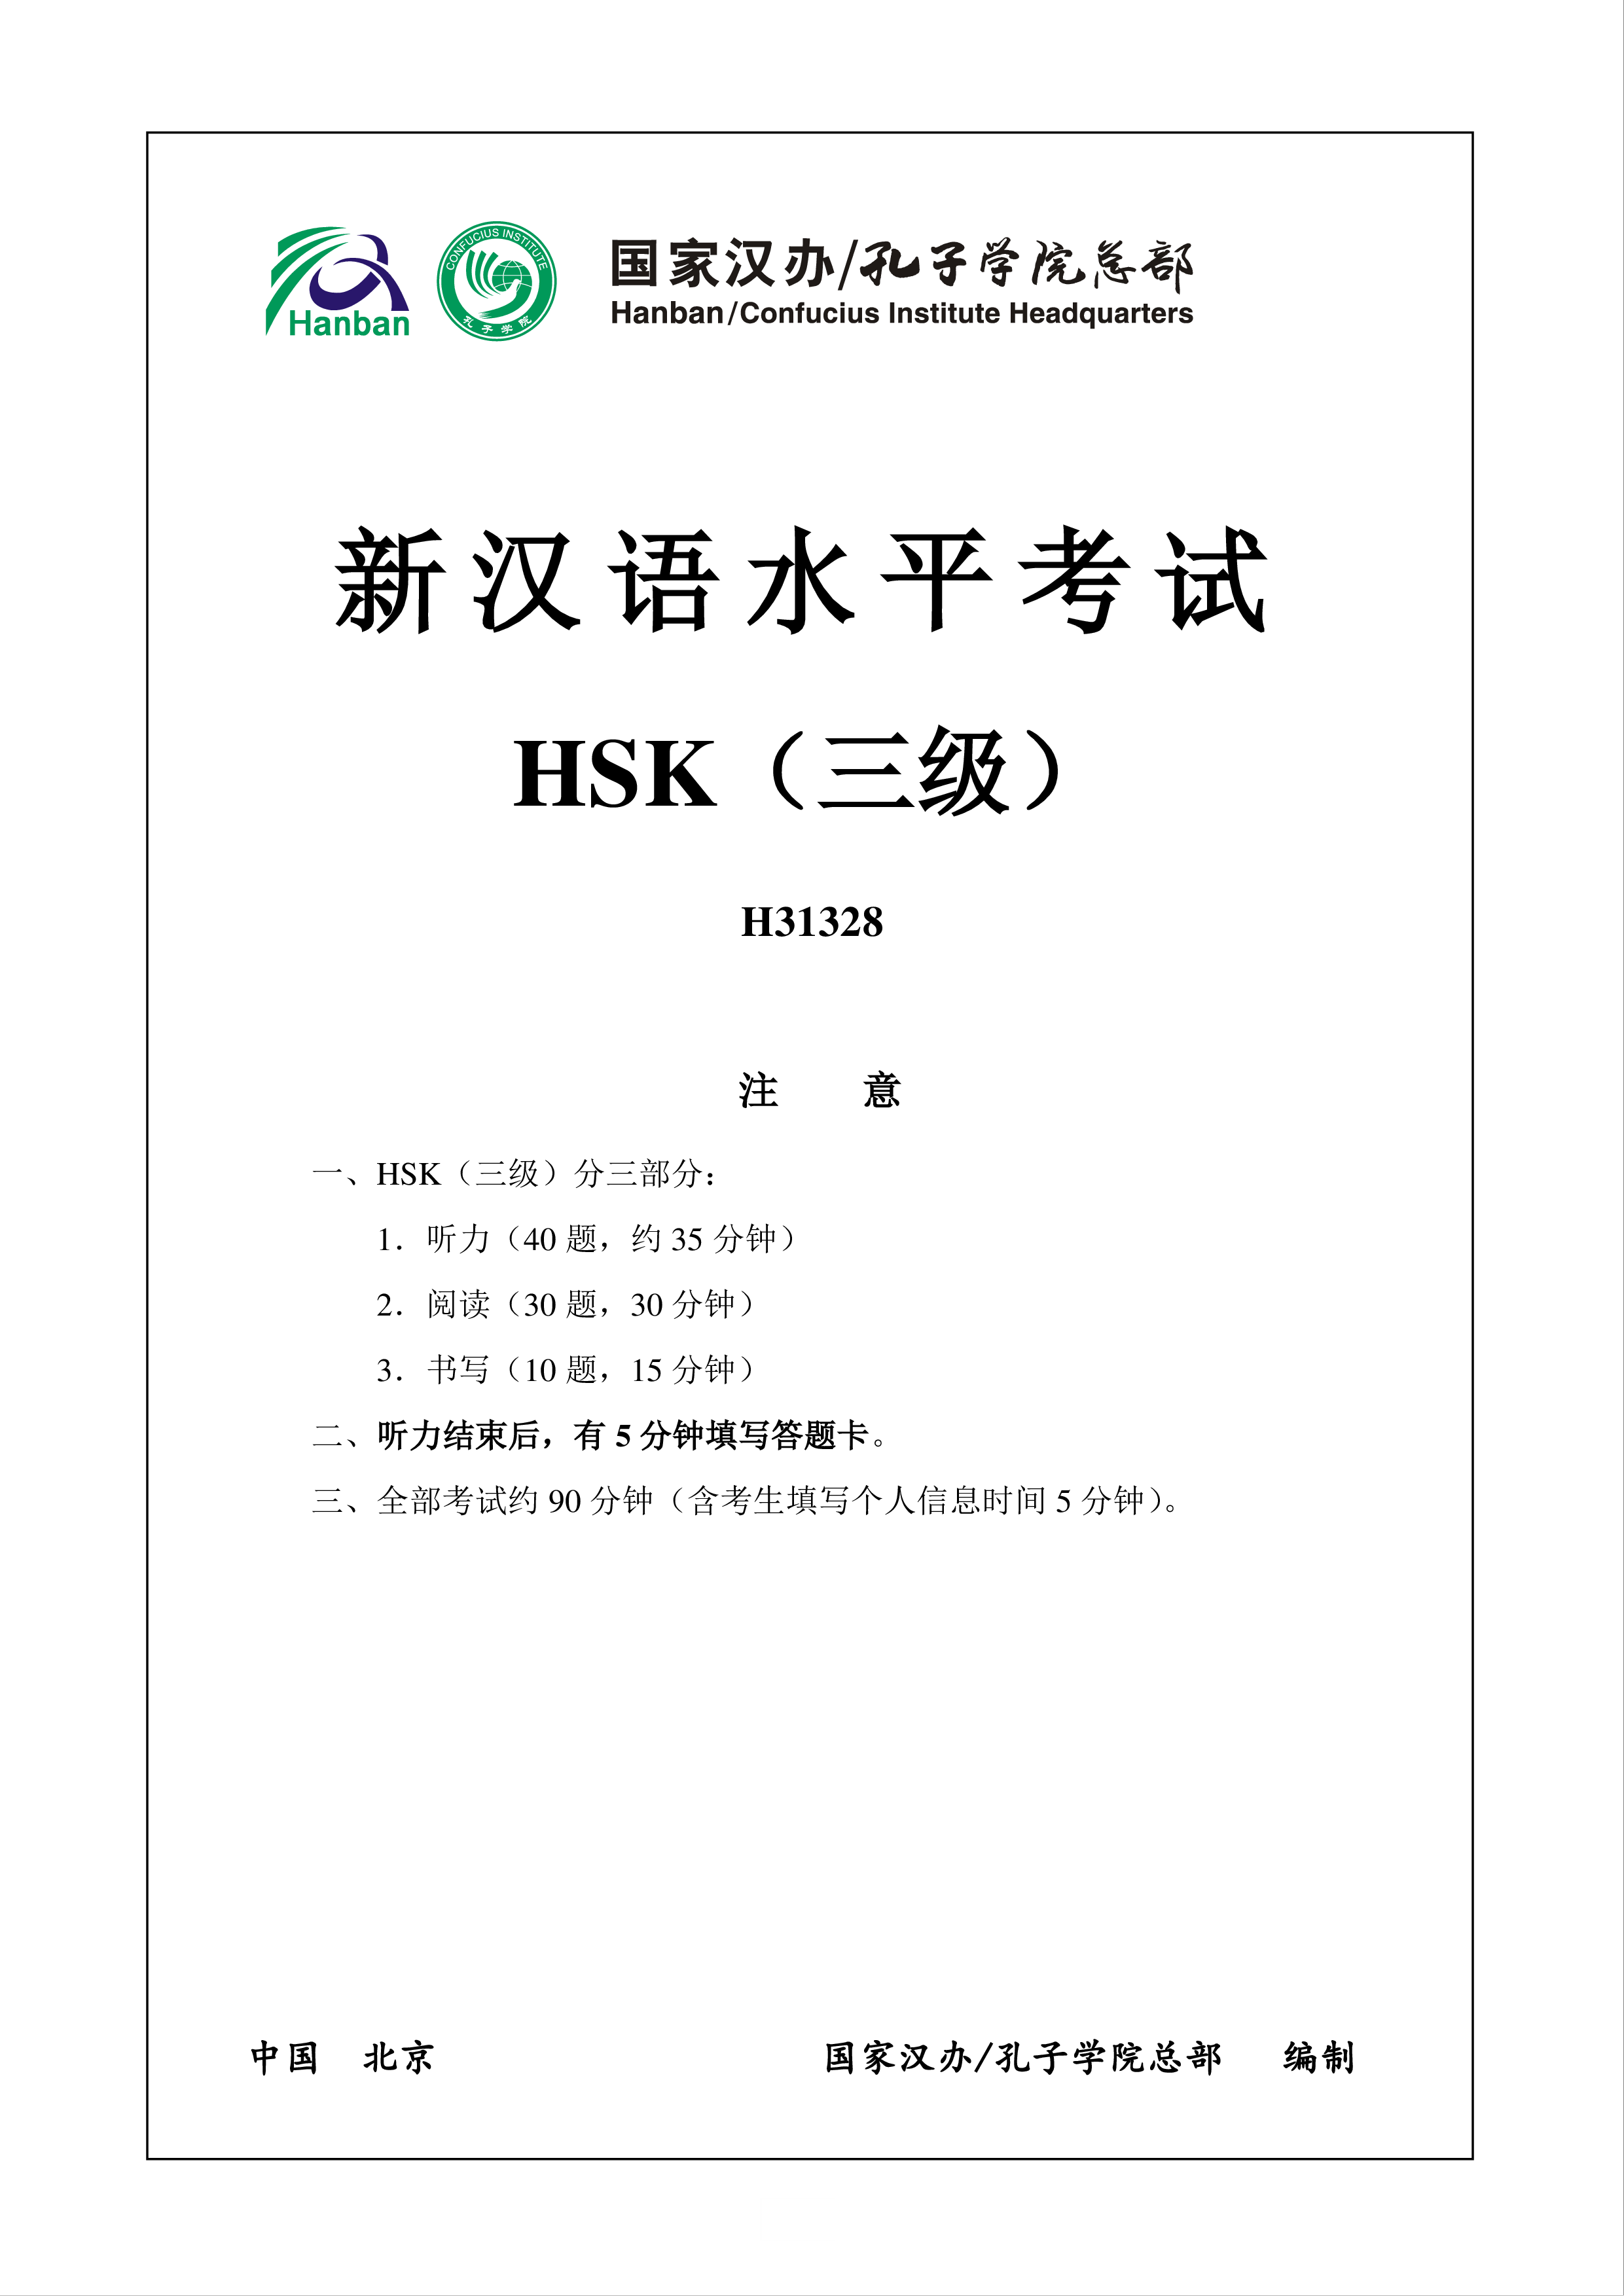 新汉语水平HSK三级考试H31328模拟真题考试音频和答案 main image